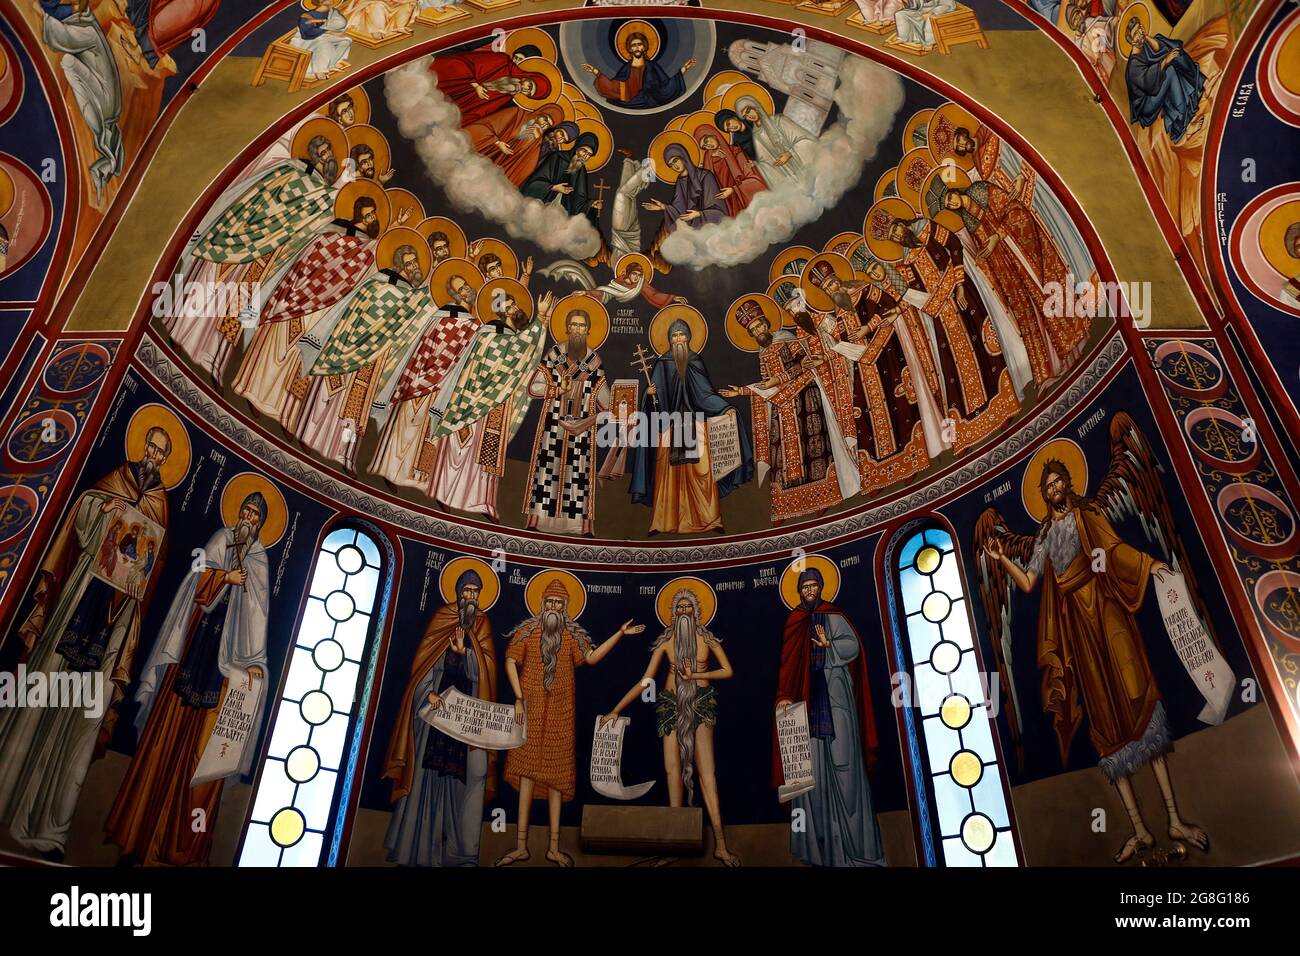 Fresques de l'église Saint-Sava, Beograd (Belgrade), Serbie, Europe Banque D'Images